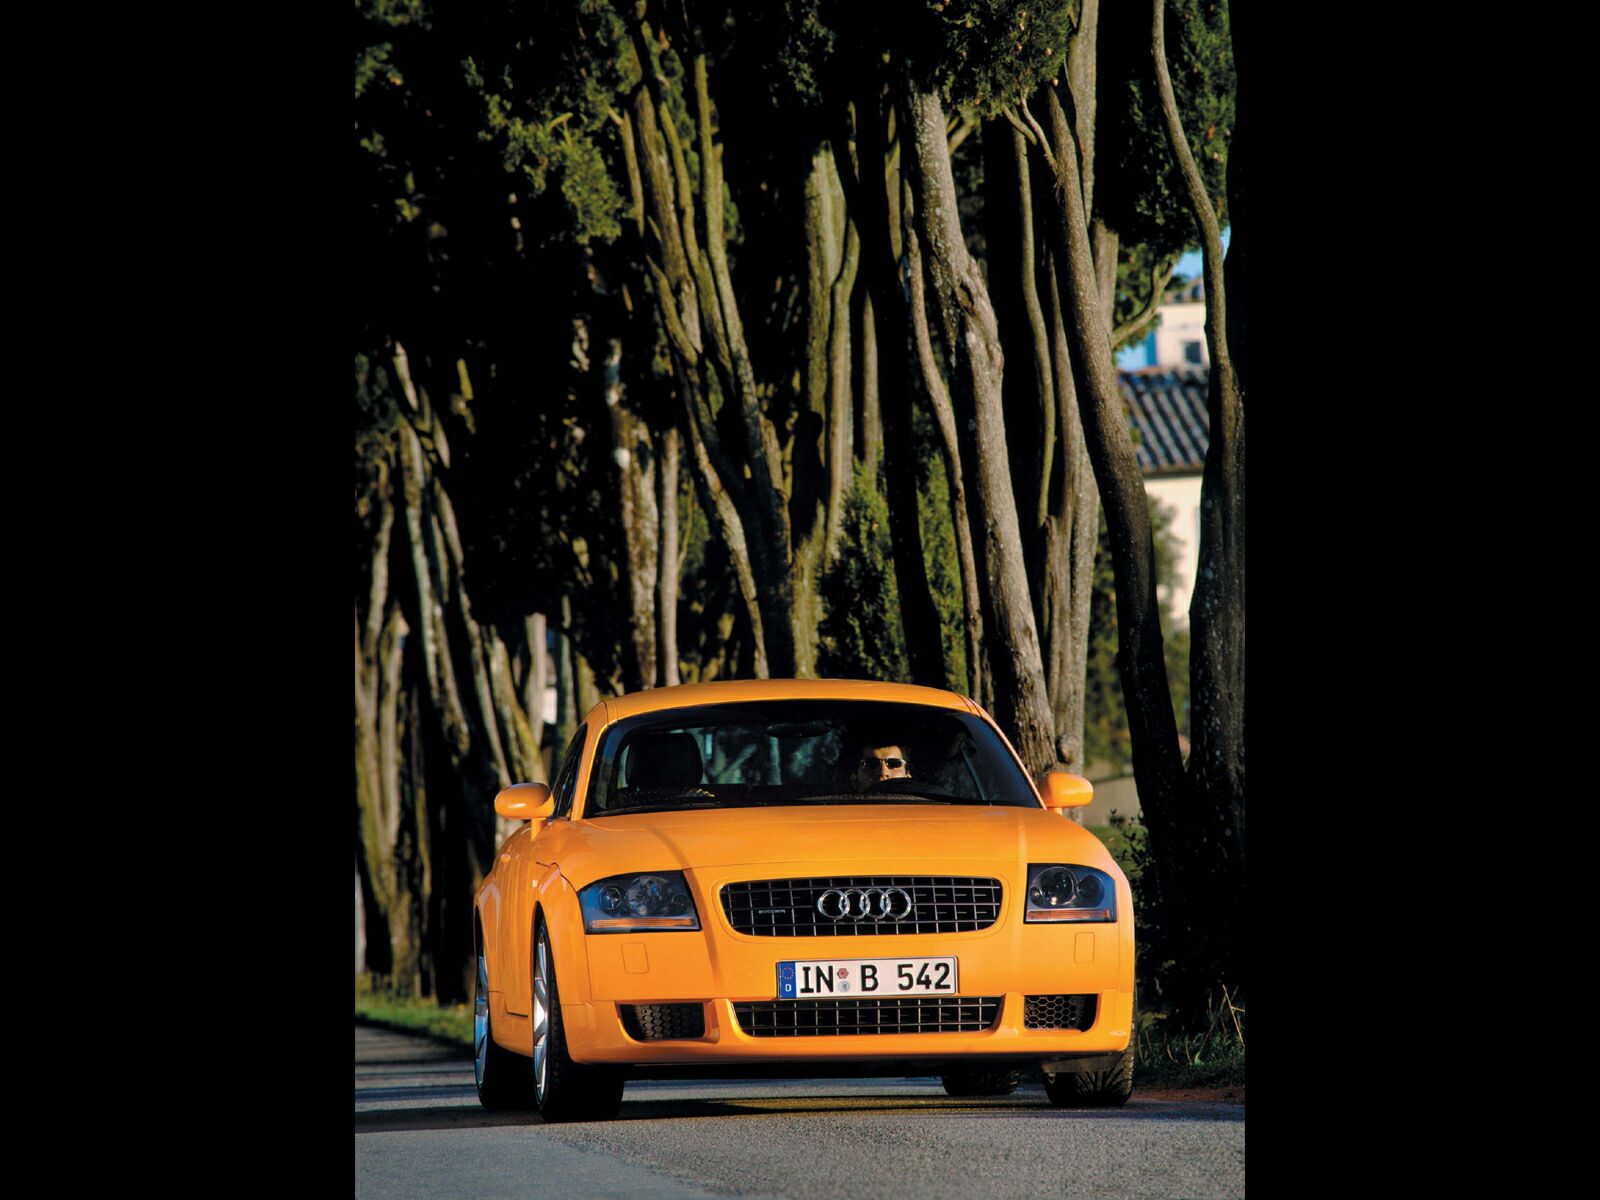 壁纸1600x1200Audi TT Coupe专辑壁纸 Audi-TT-Coupe壁纸壁纸 Audi-TT-Coupe壁纸图片 Audi-TT-Coupe壁纸素材 汽车壁纸 汽车图库 汽车图片素材桌面壁纸